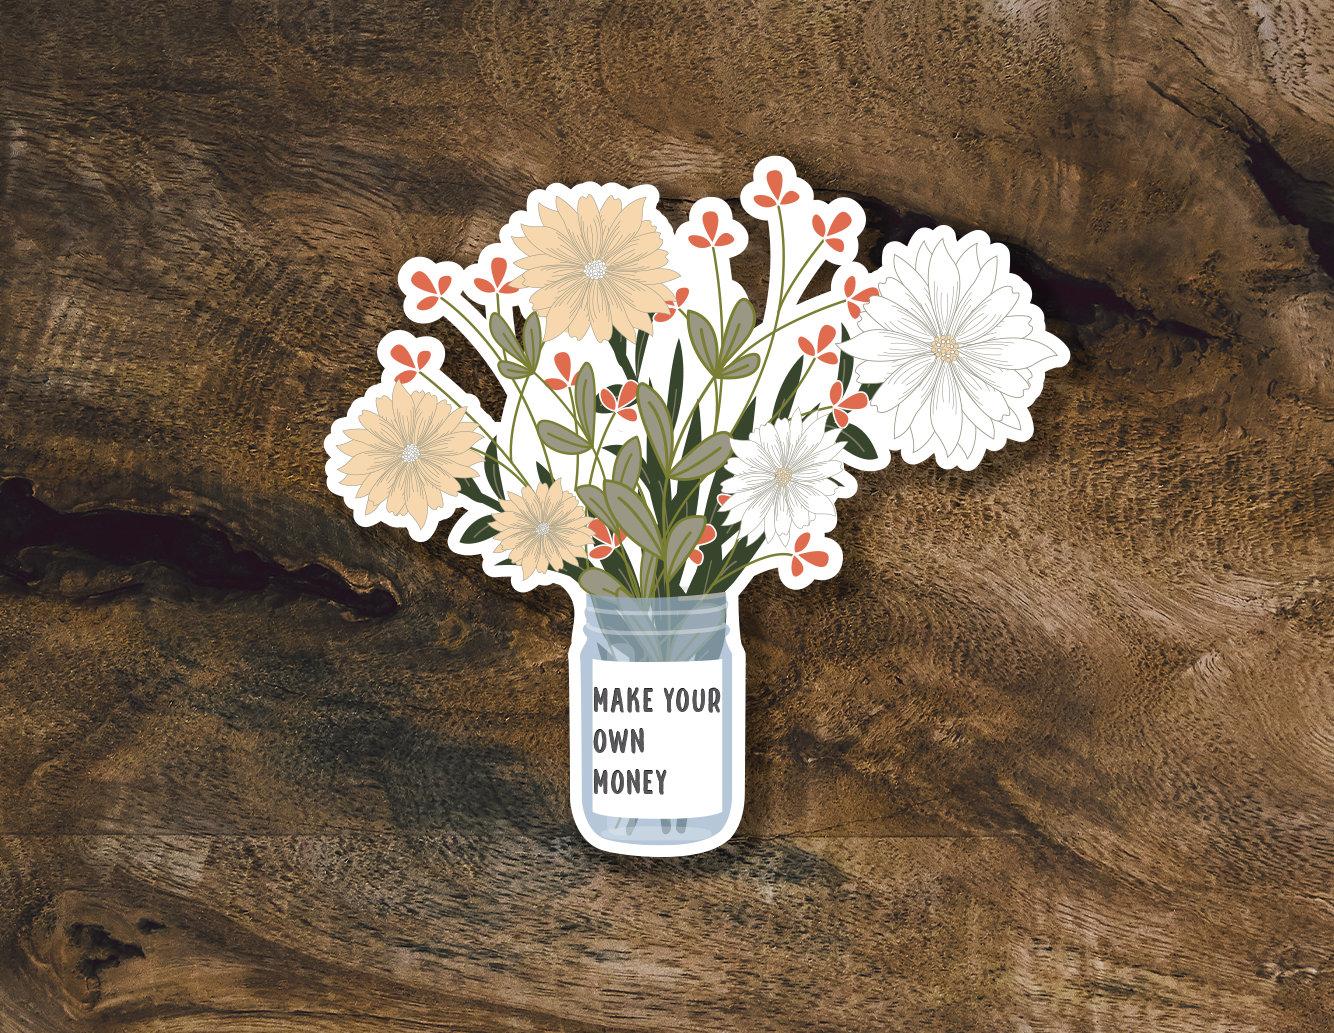 Wild Flower Bouquet Sticker | Make Your Own Money Sticker | Feminist Stickers | Independent Women Stickers | Trendy Floral Stickers|